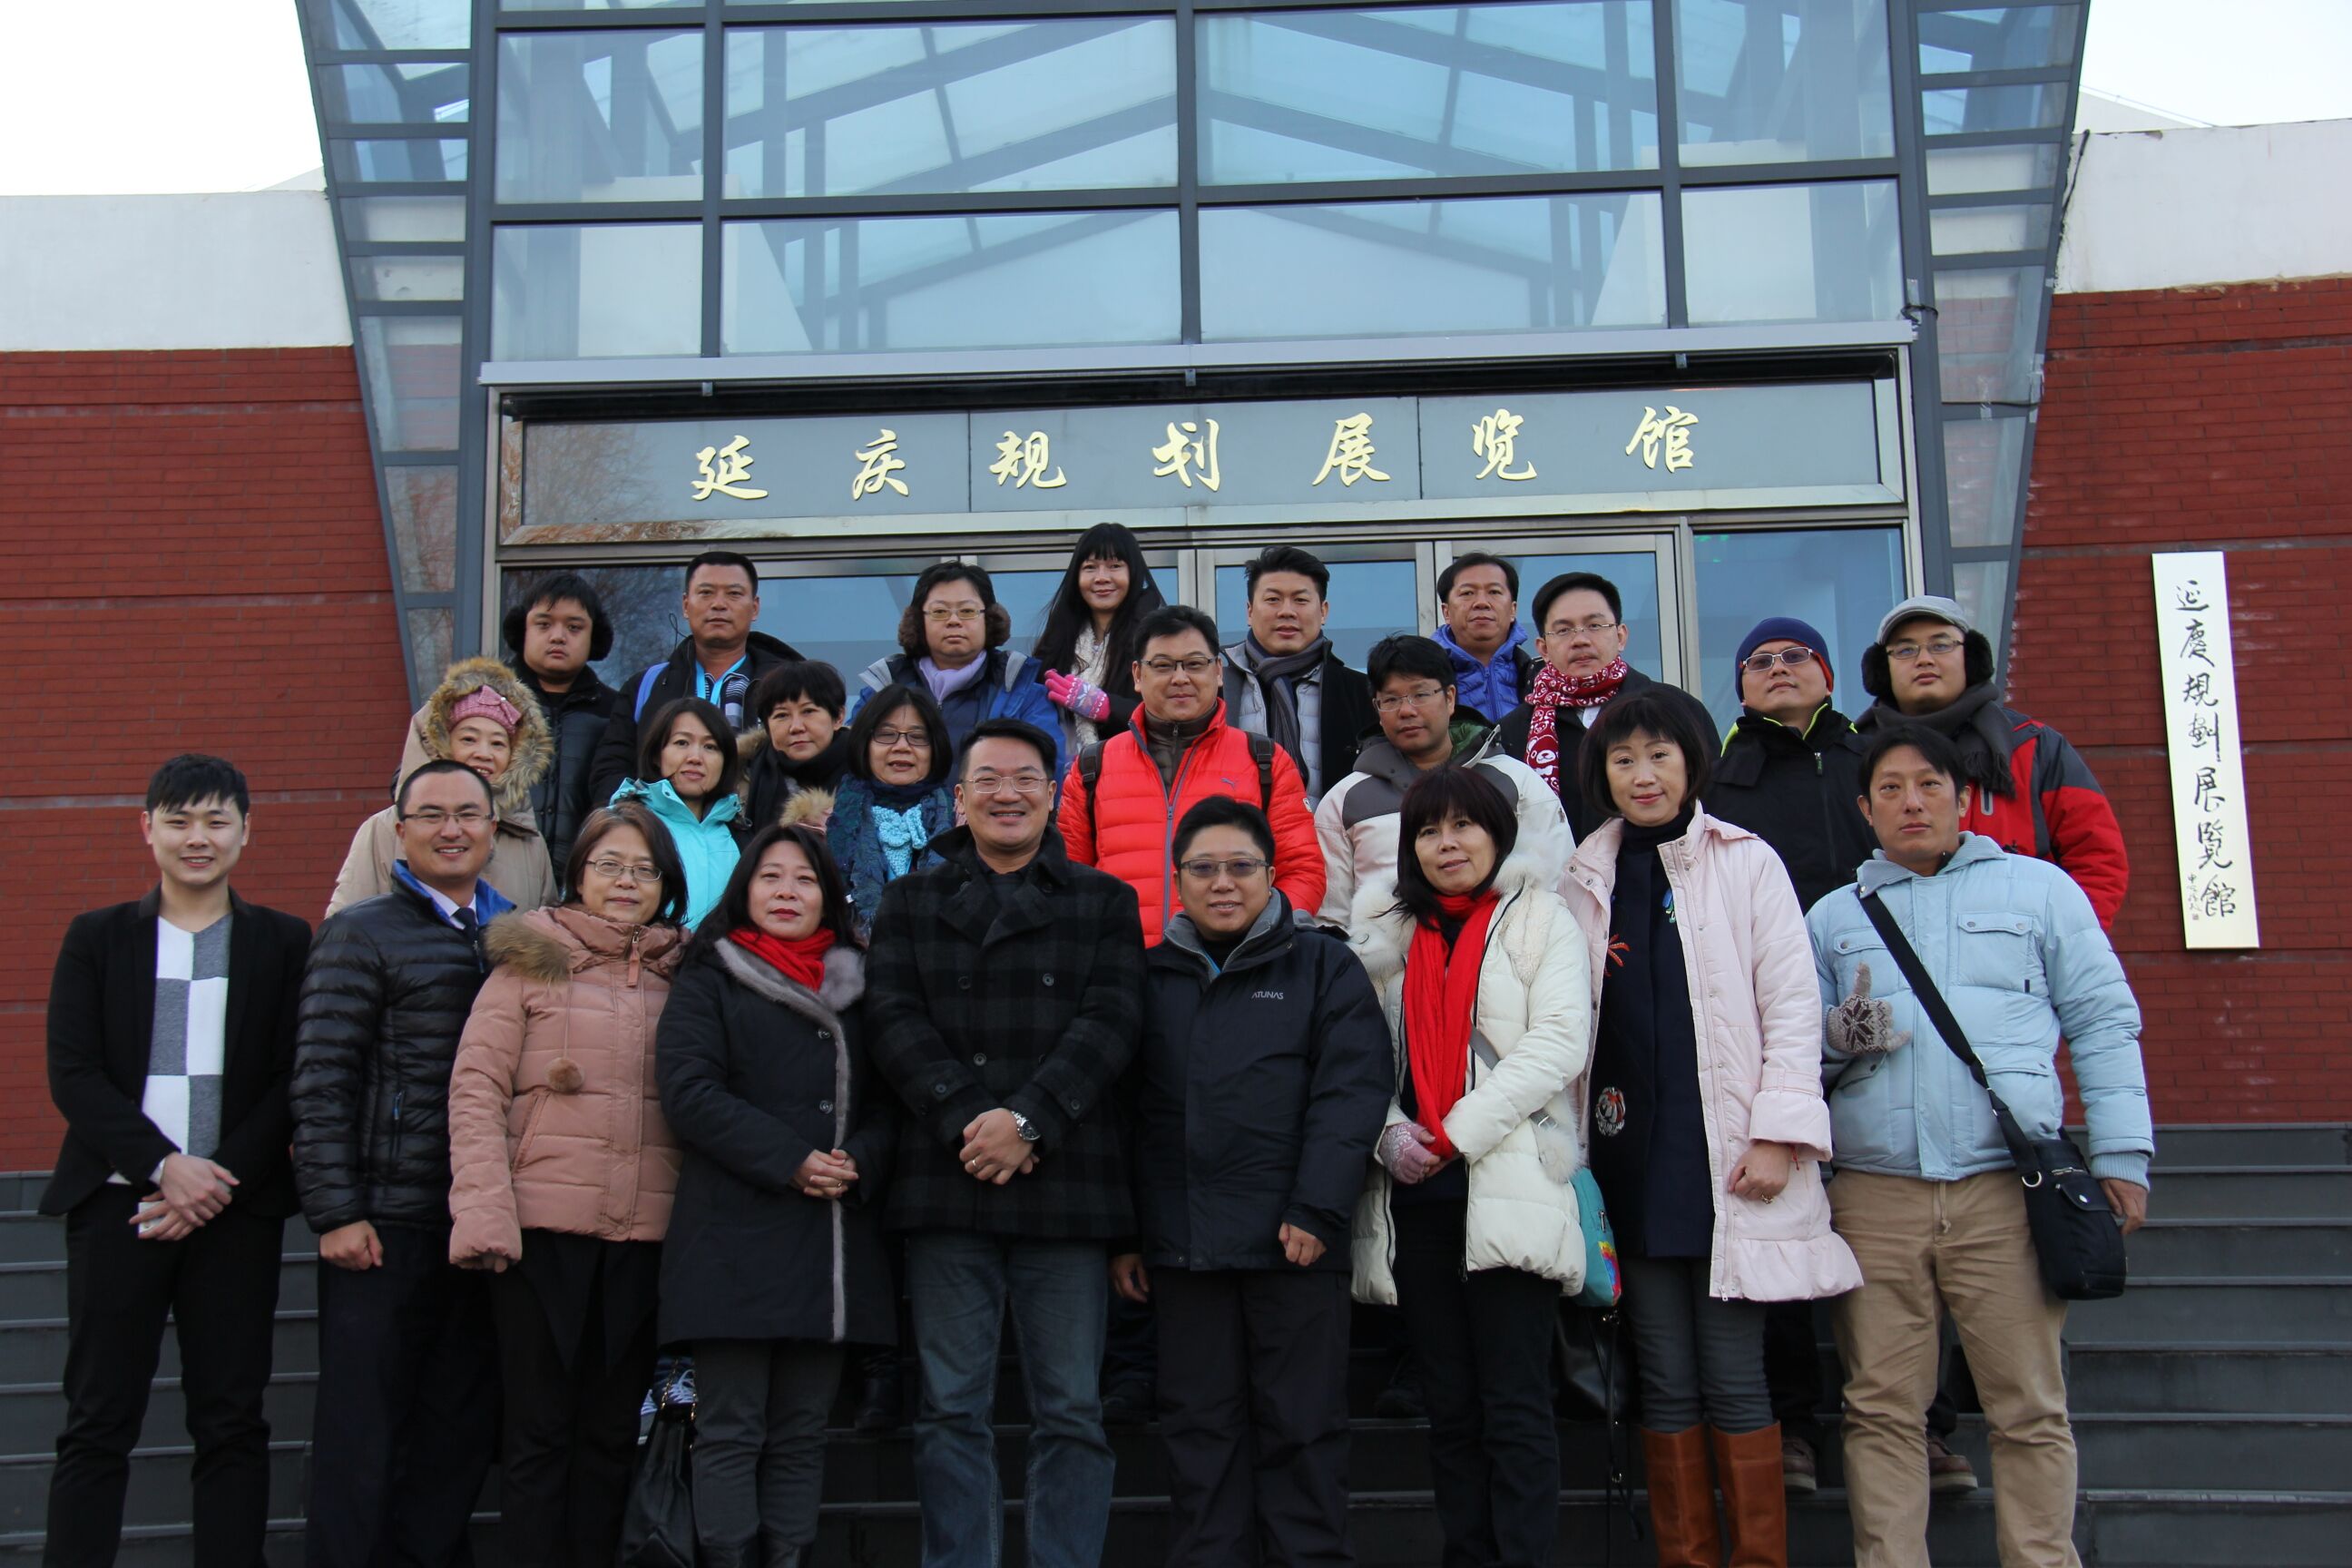 臺灣中華青年企業家協會參訪團到北京延慶區參訪